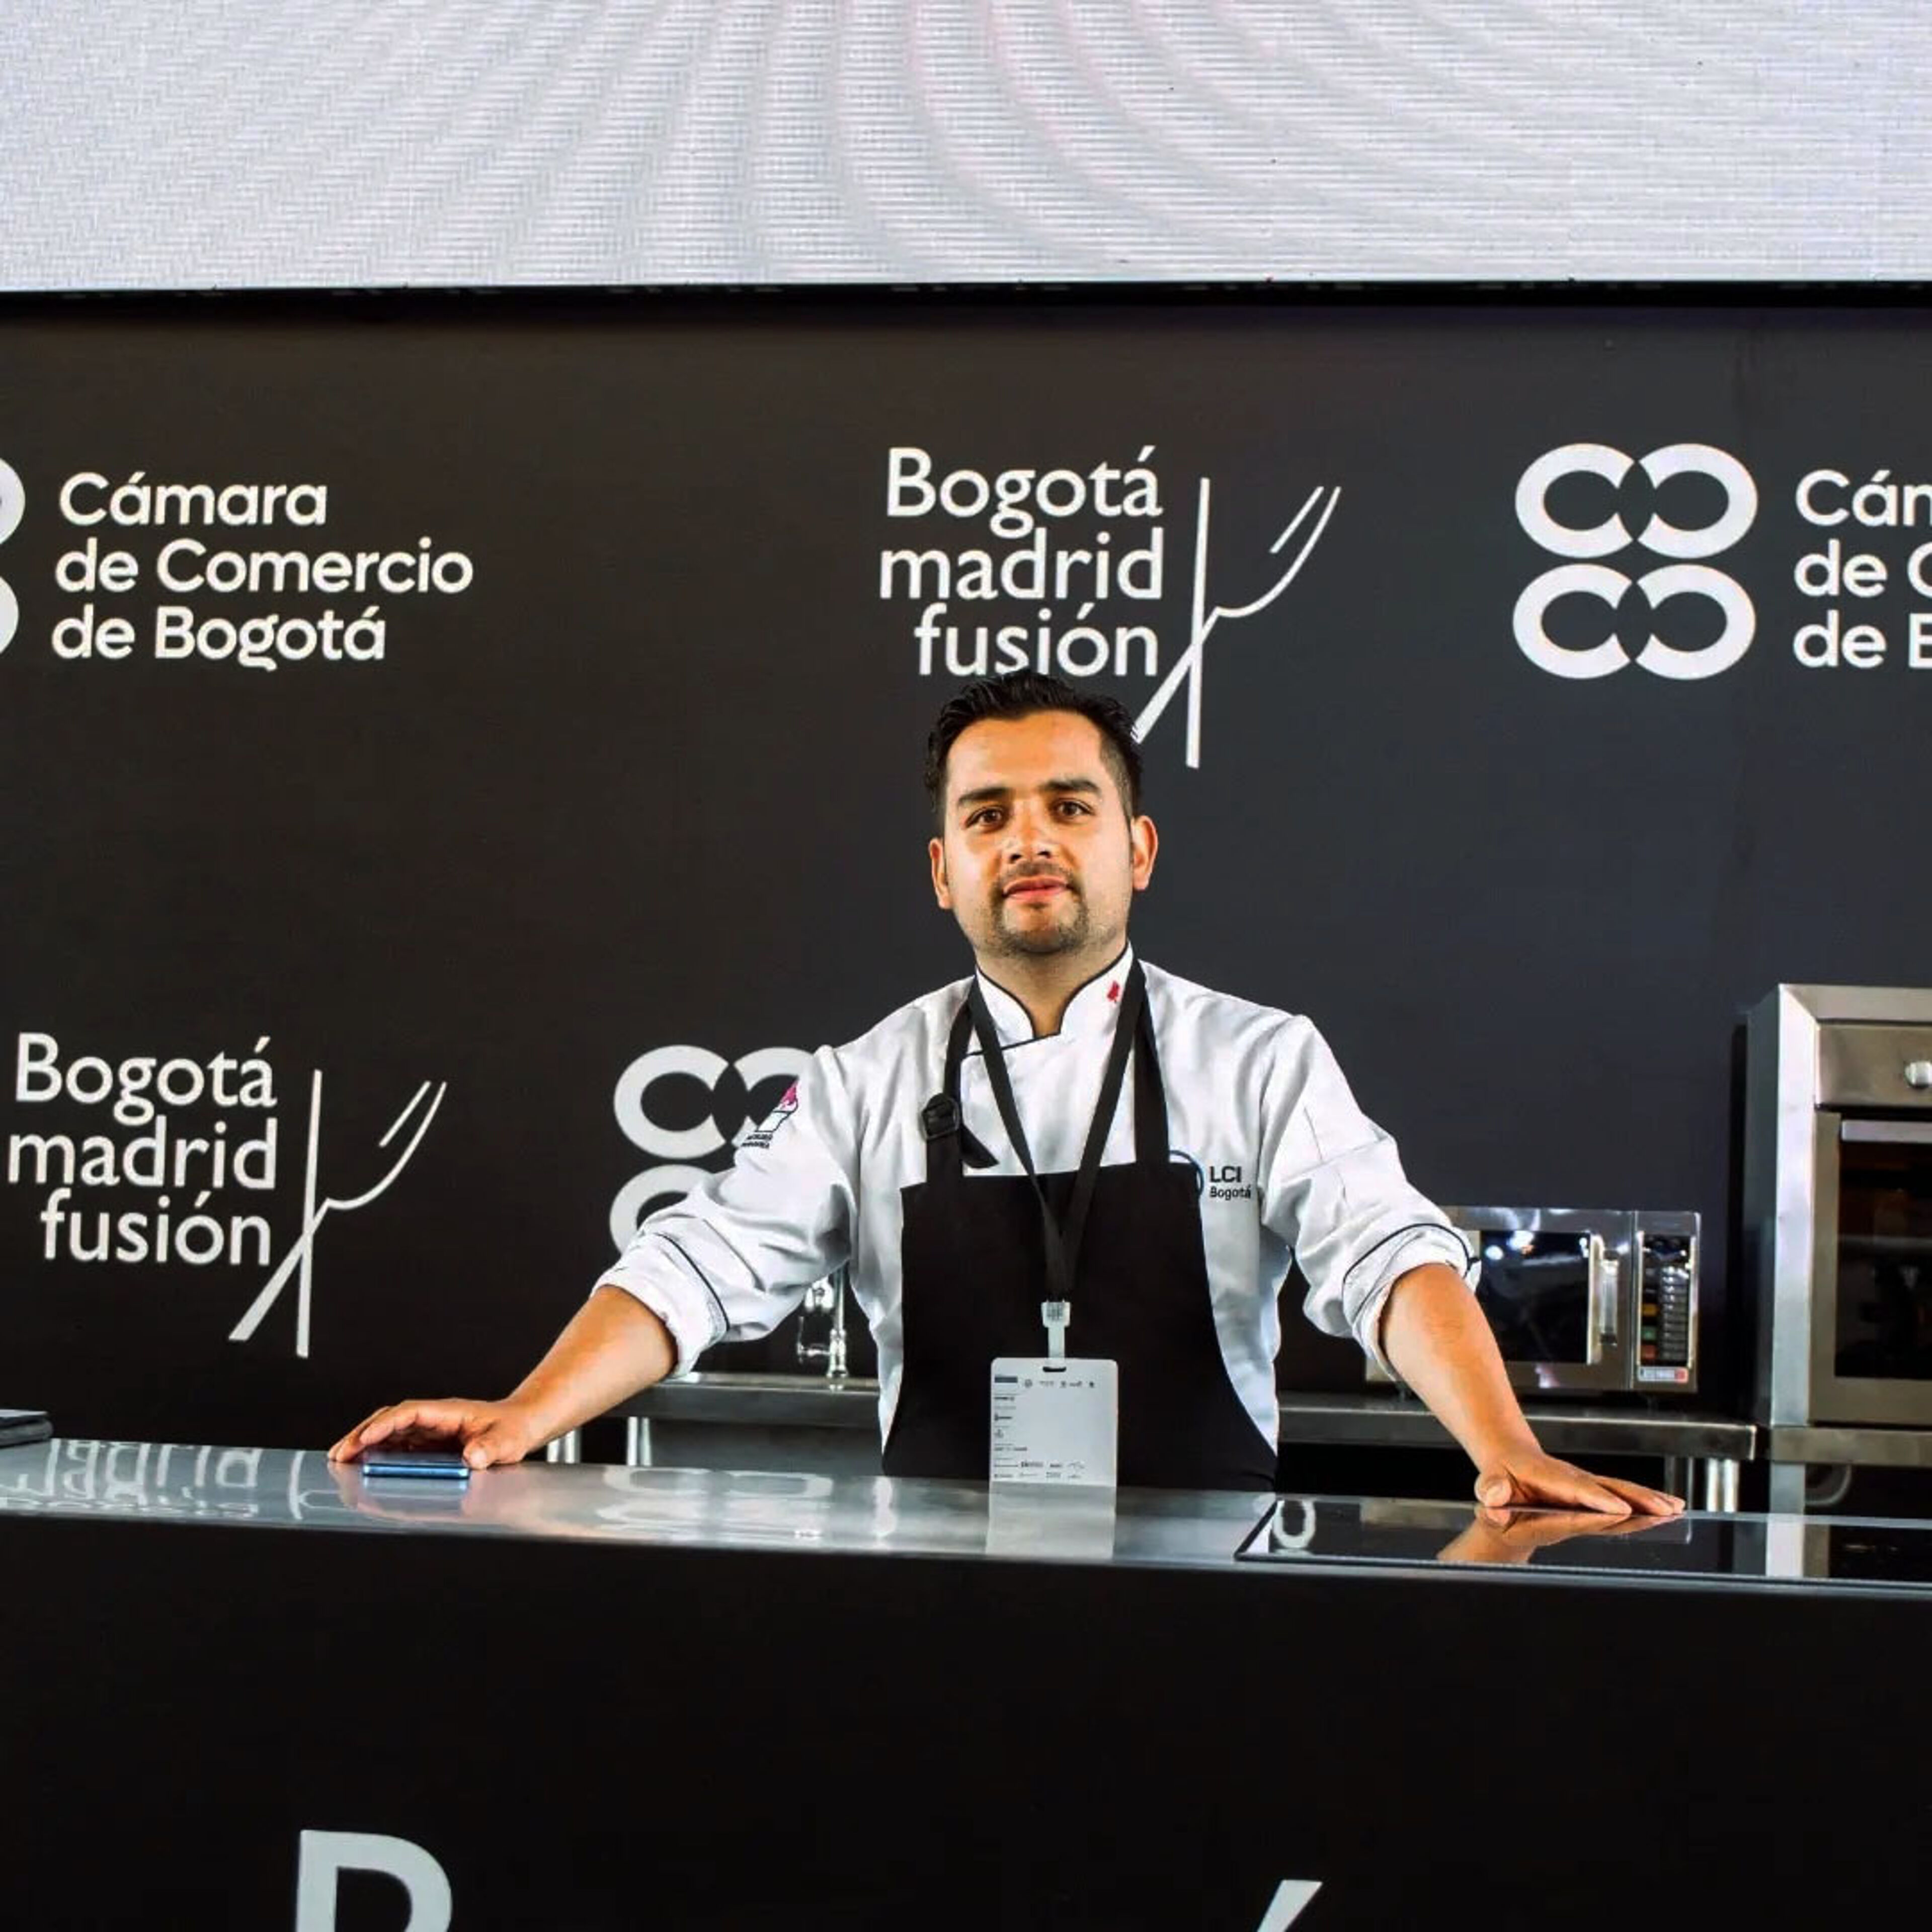 Un chef confiado en atuendo profesional está detrás de un mostrador de presentación en el evento 'Bogotá Madrid Fusión'.